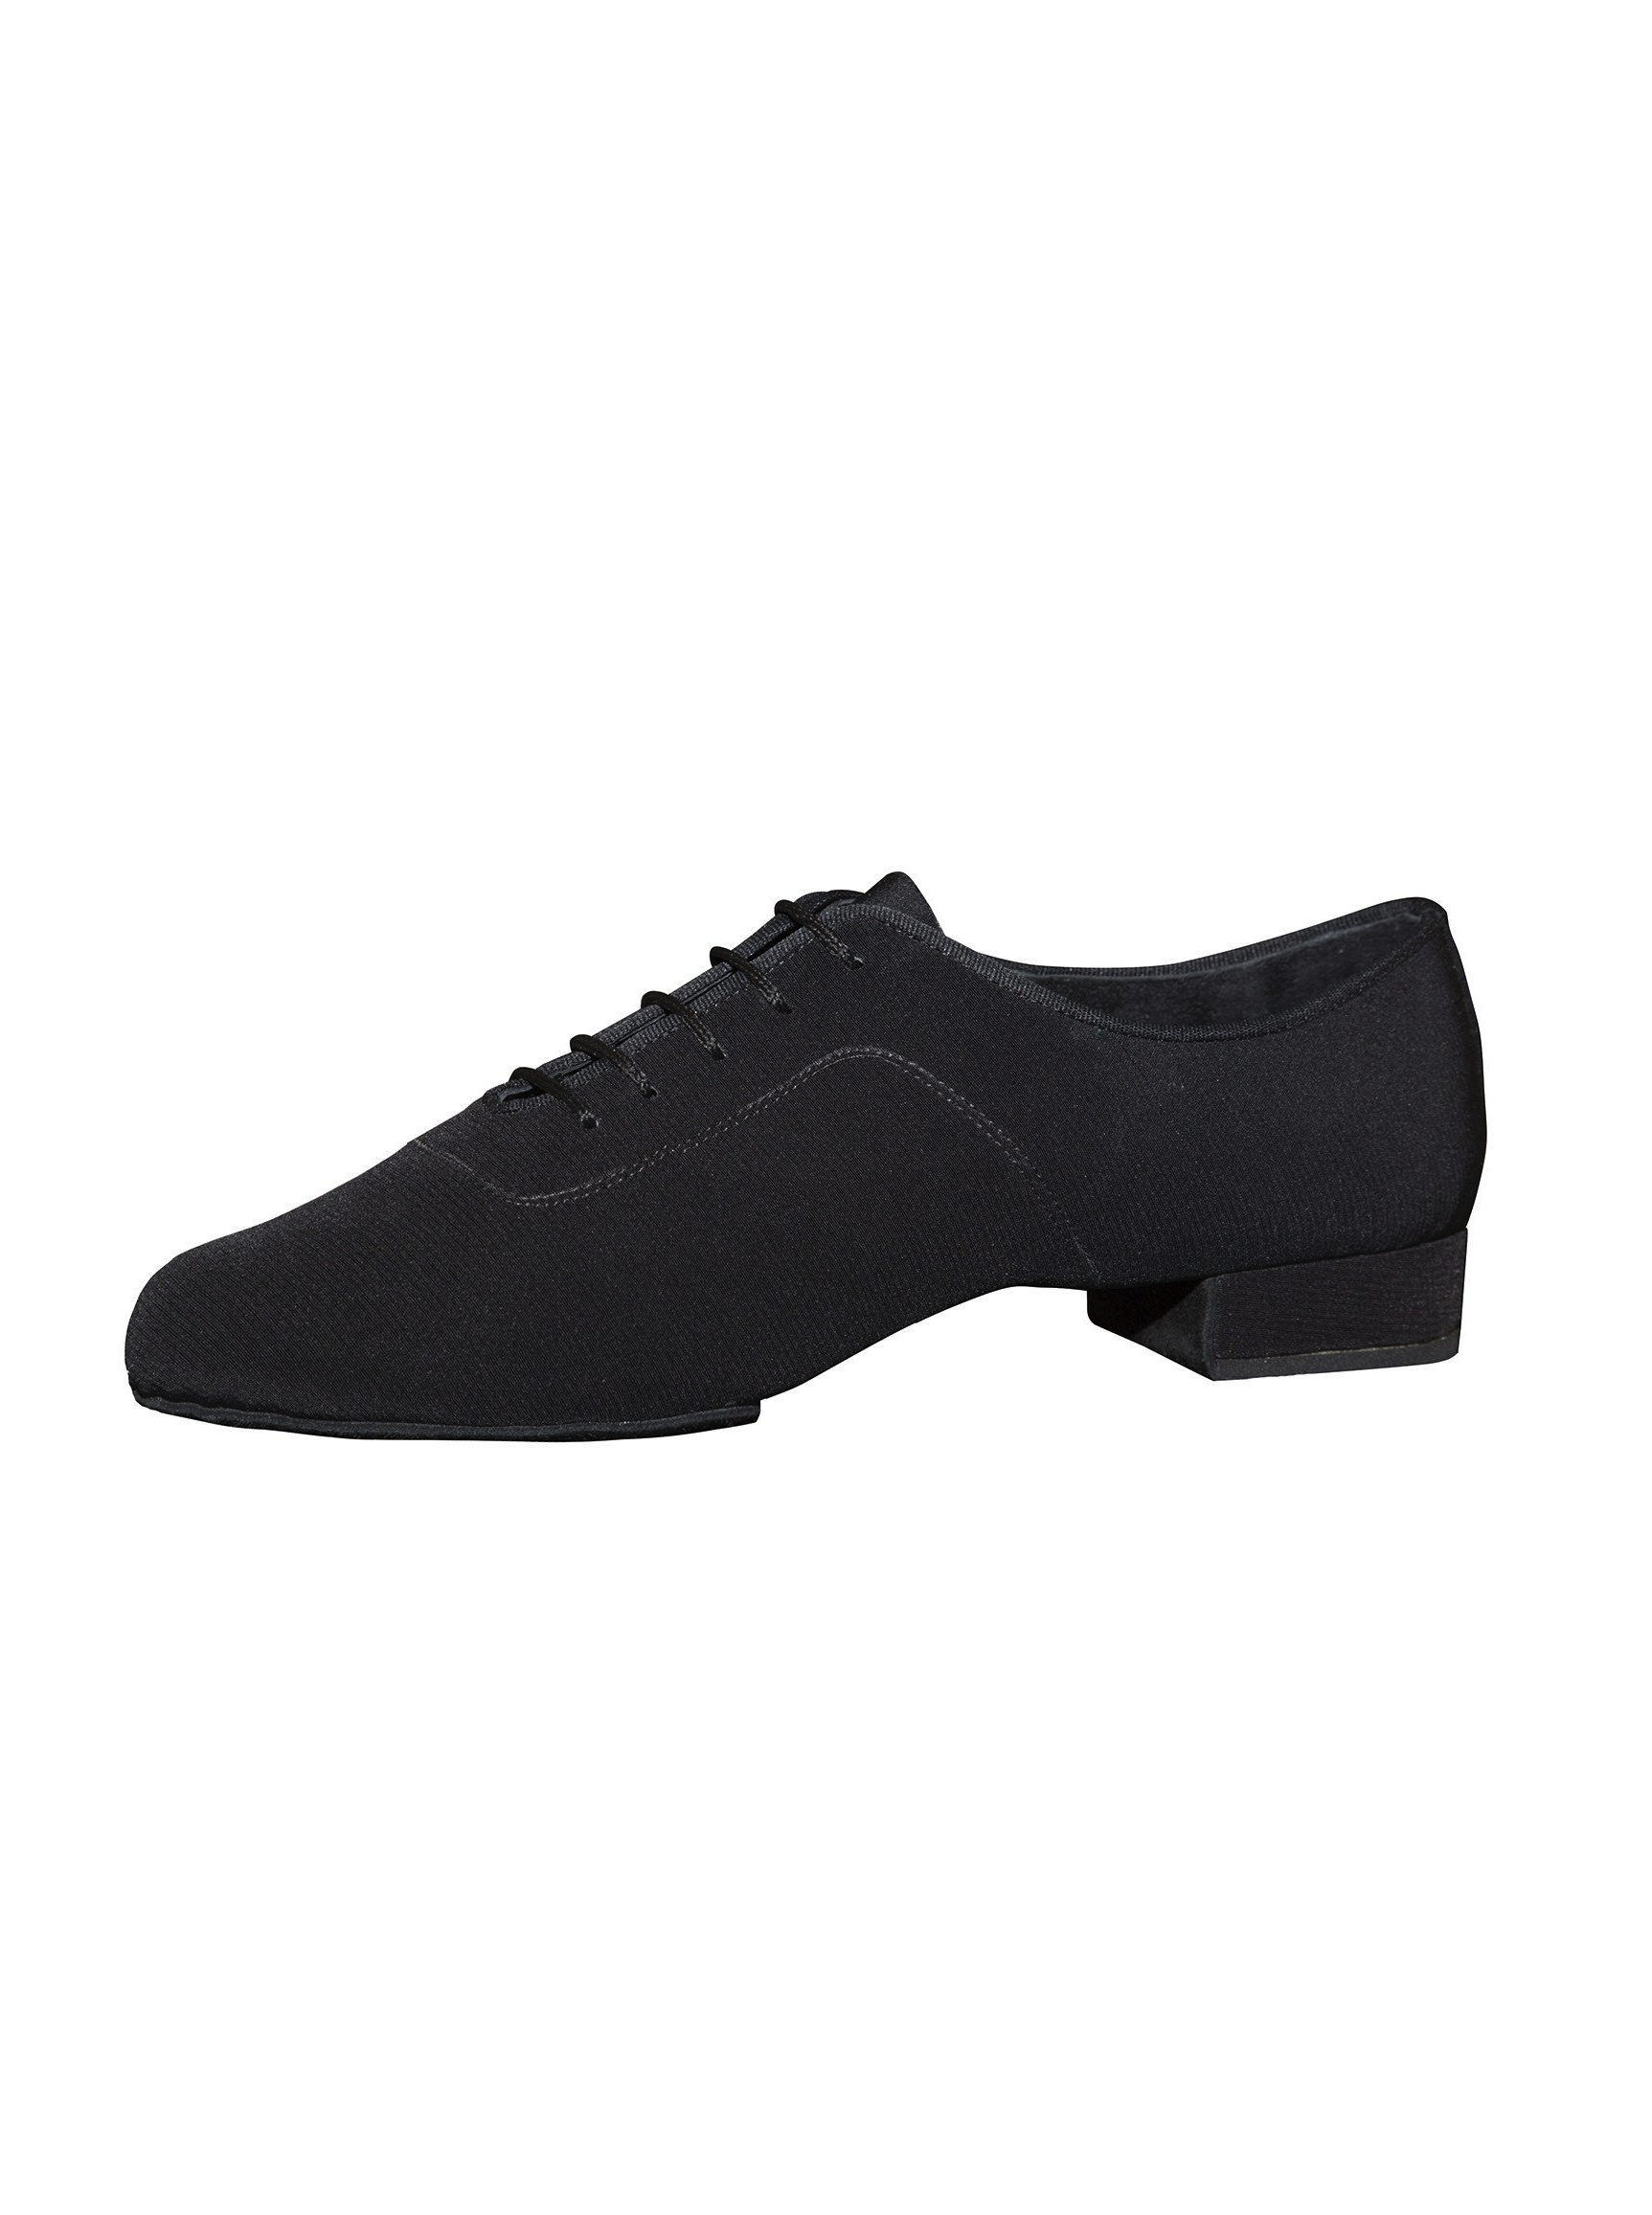 Buy dance shoes for practice Aida 118 Fabio, 2 cm in Switzerland Zurich